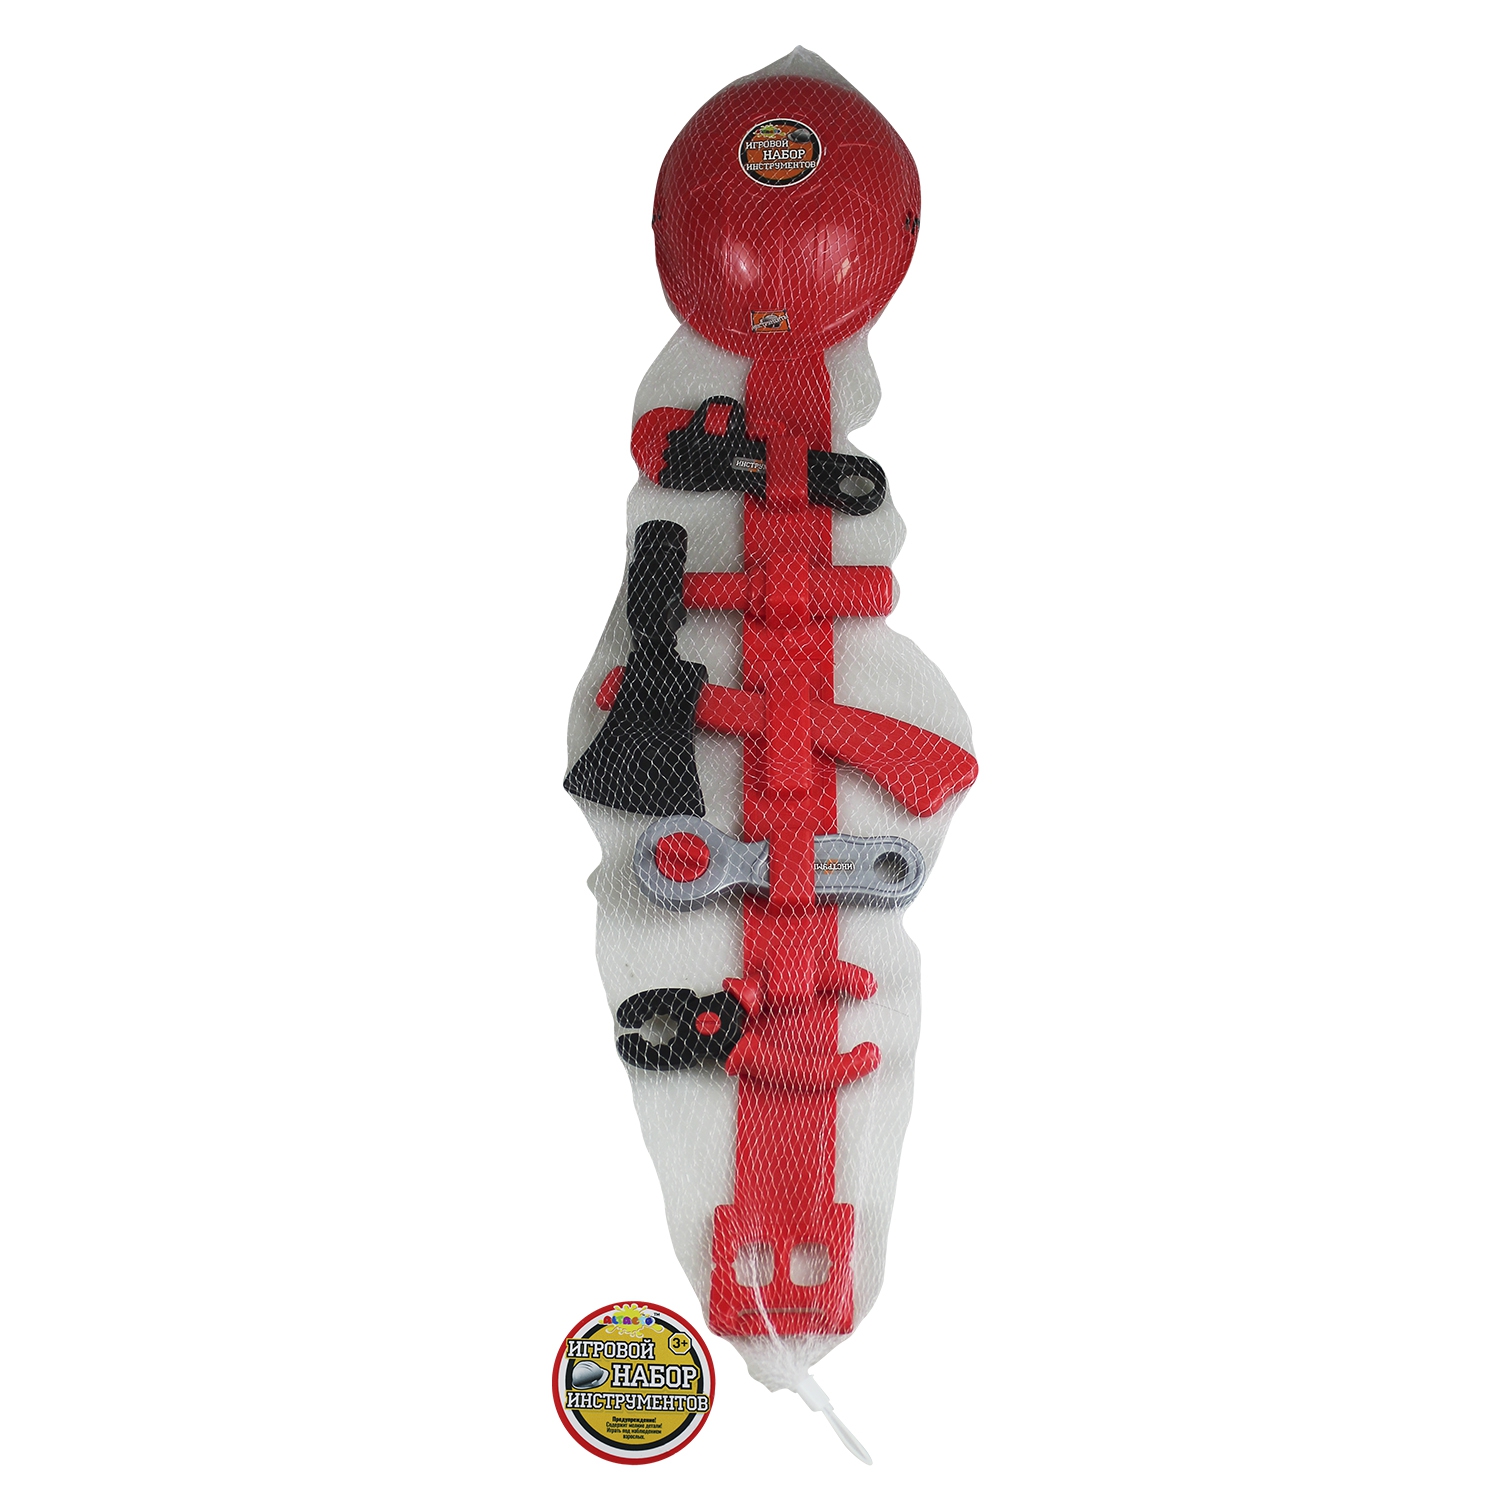 Игровой набор Altacto Маленький плотник, Красный-чёрный цвет (ALT0202-125)